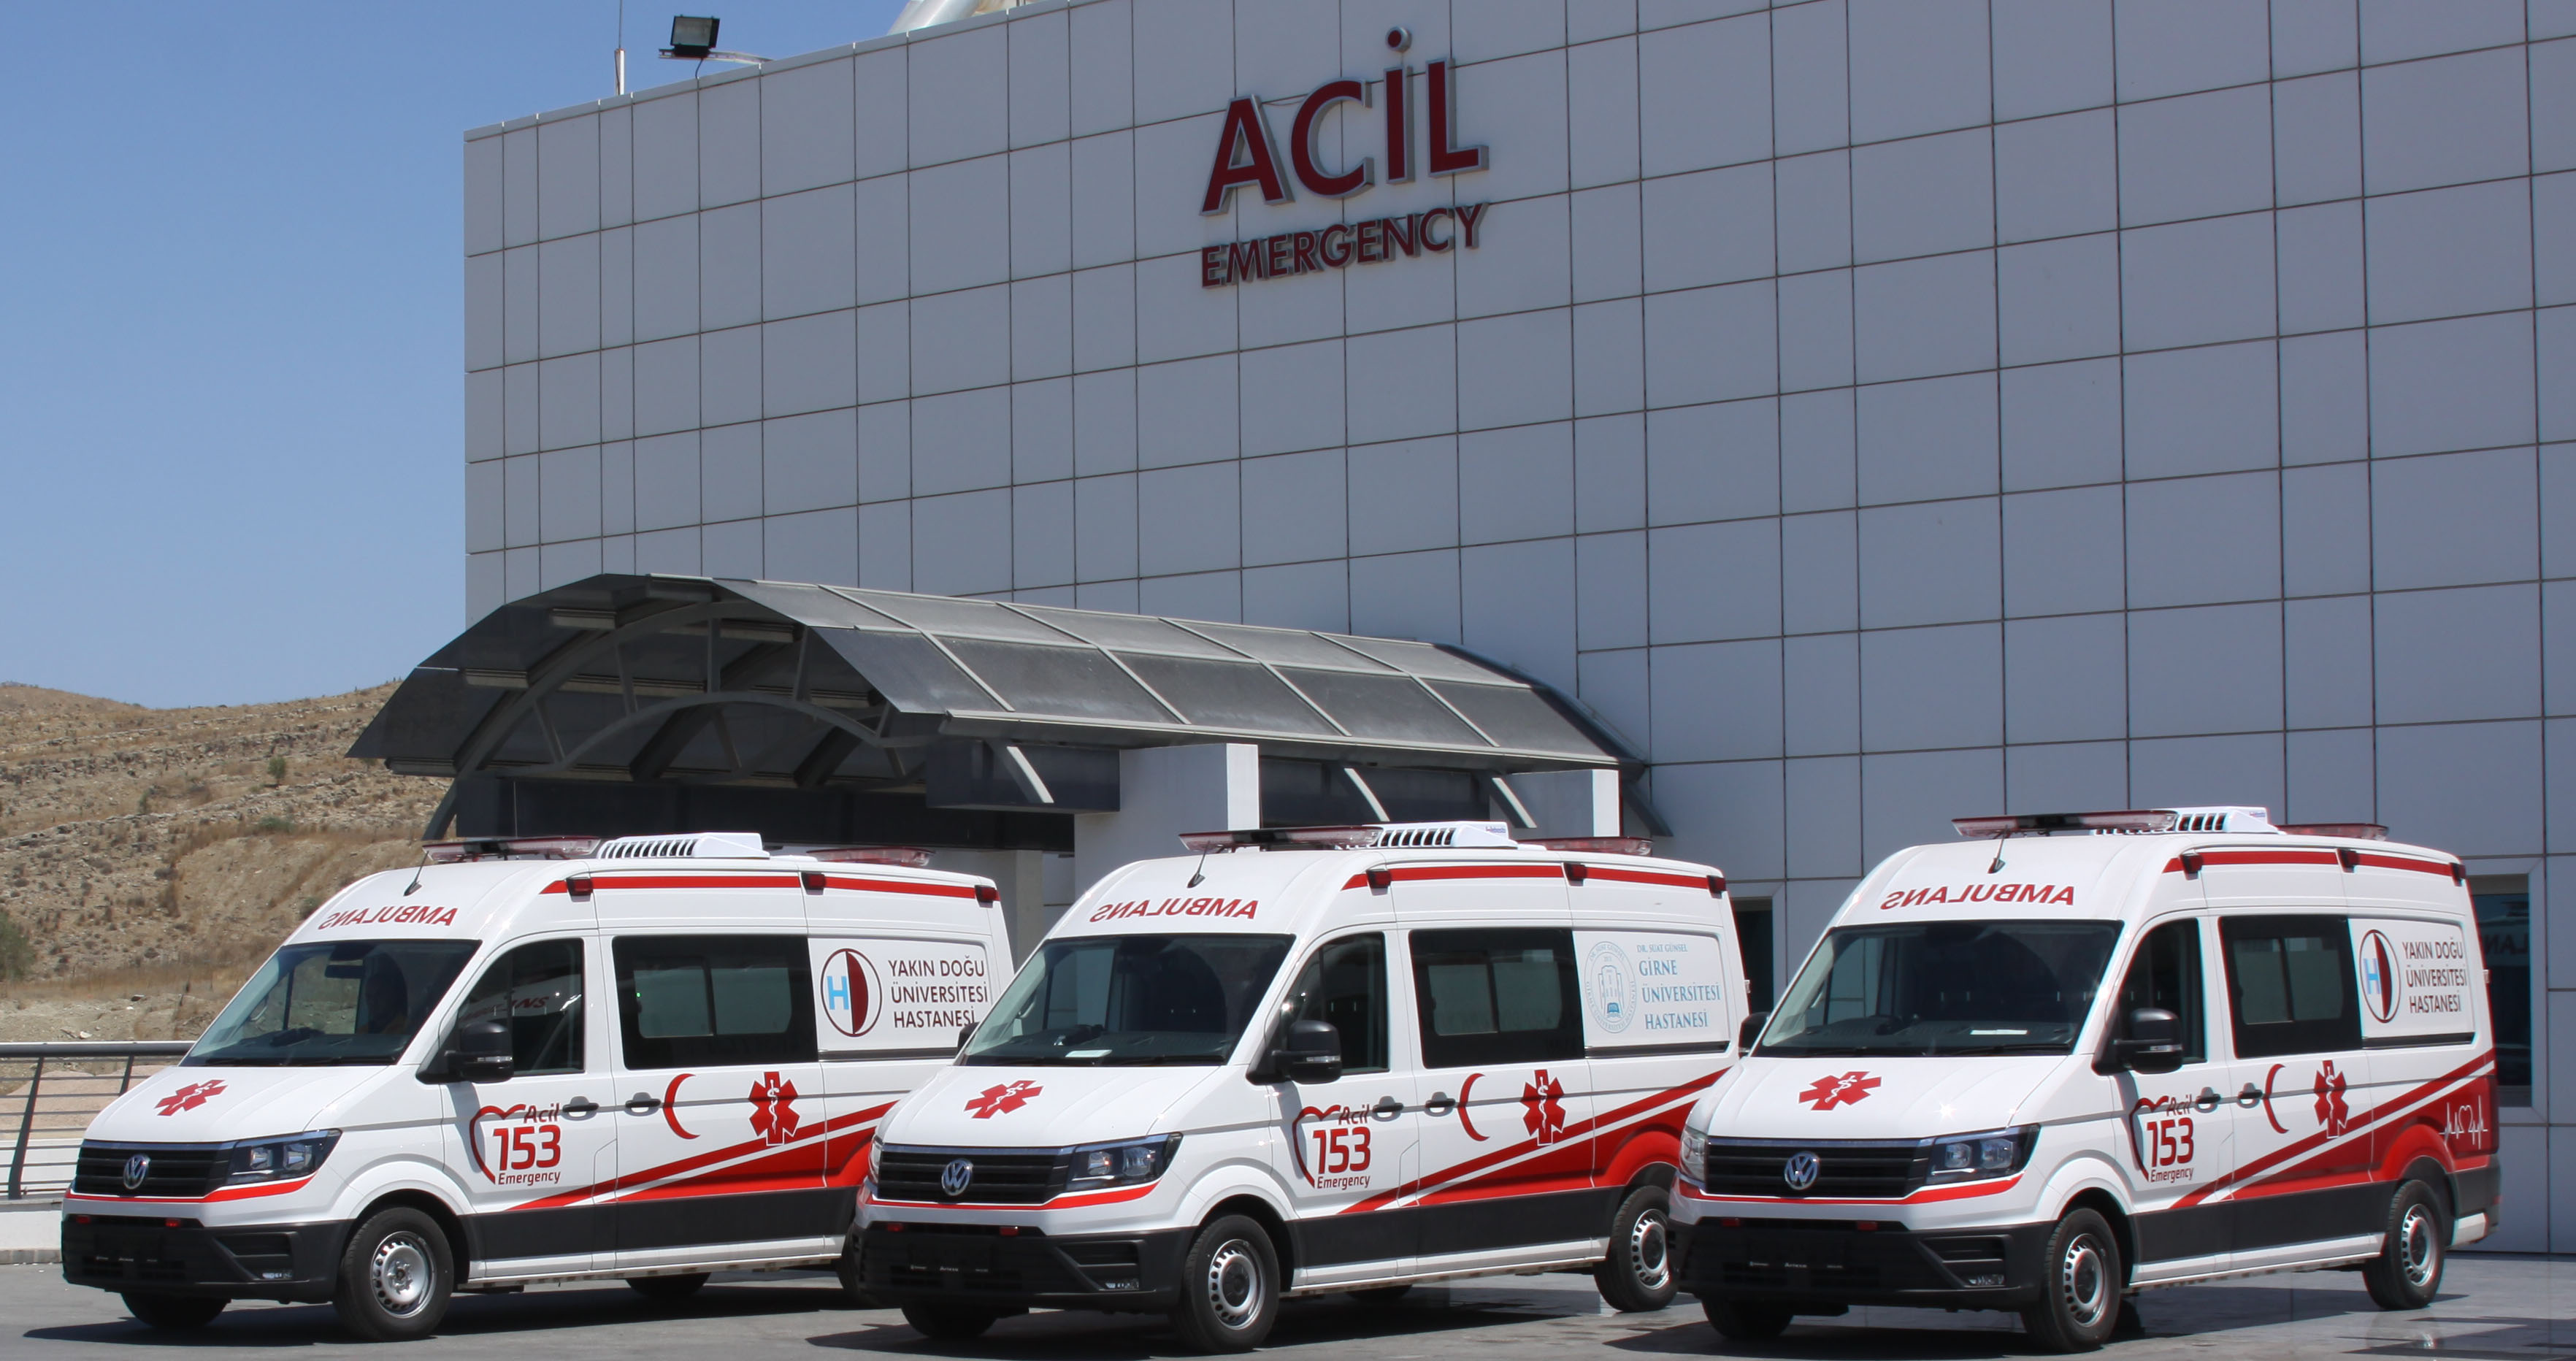 Yakın Doğu Üniversitesi Hastanesi Ve Dr. Suat GÜNSEL Girne Üniversitesi Hastanelerine Ortak Hizmet Veren 153 Acil Çağrı Merkezi Tam Donanımlı On İki Ambulansıyla Tüm Bölgelere Hizmet Veriyor